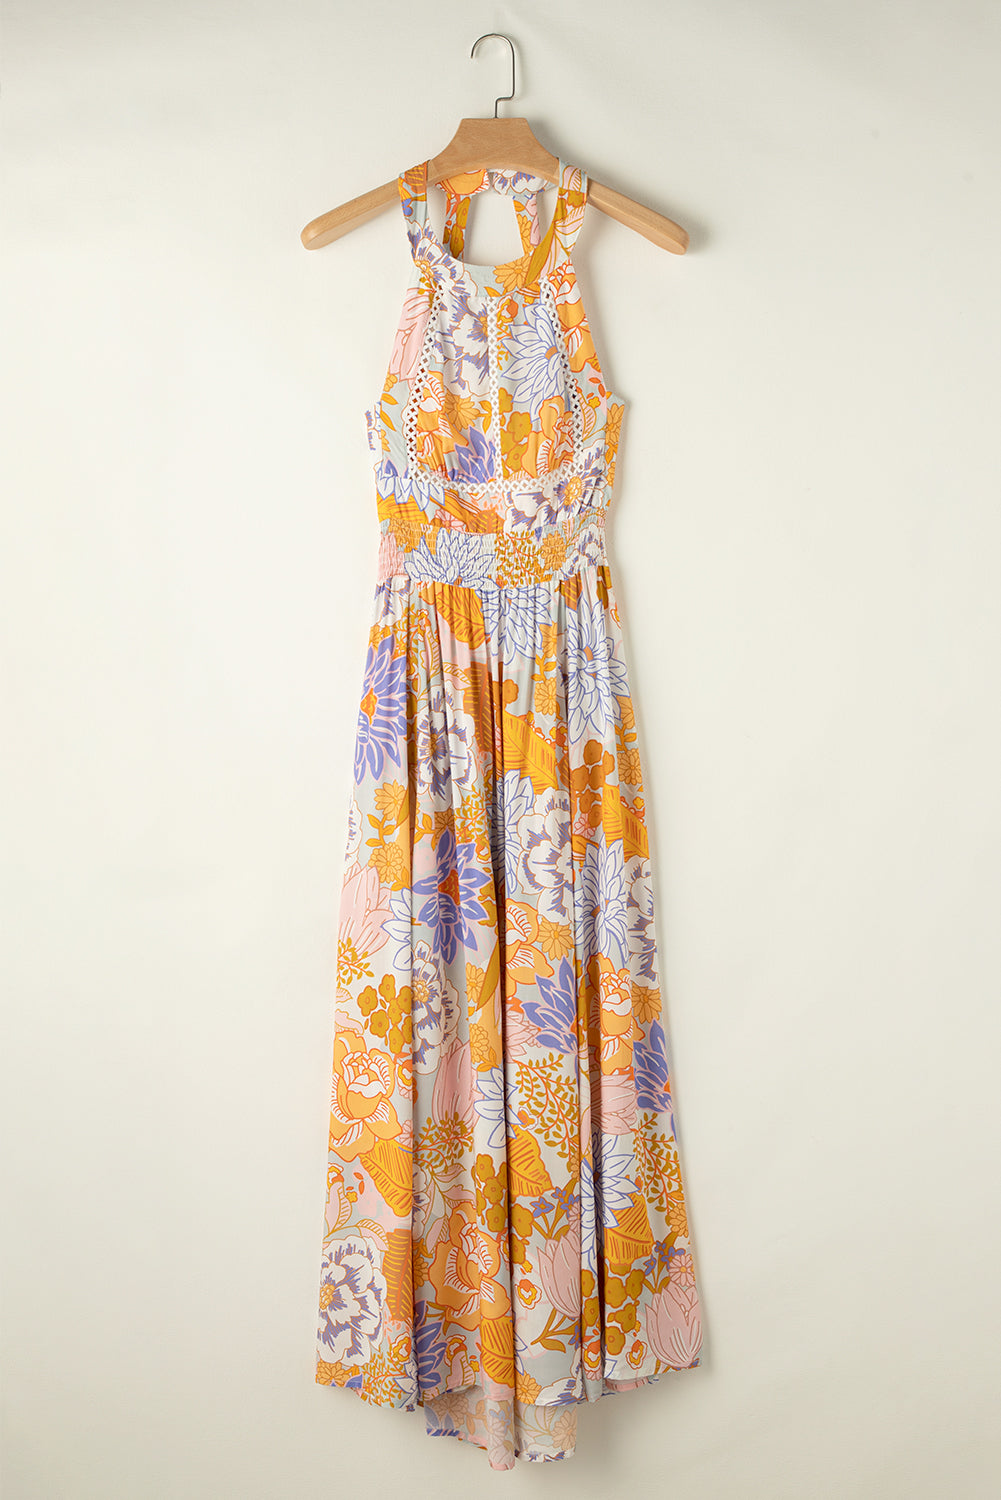 Tied Printed Grecian Sleeveless Maxi Dress